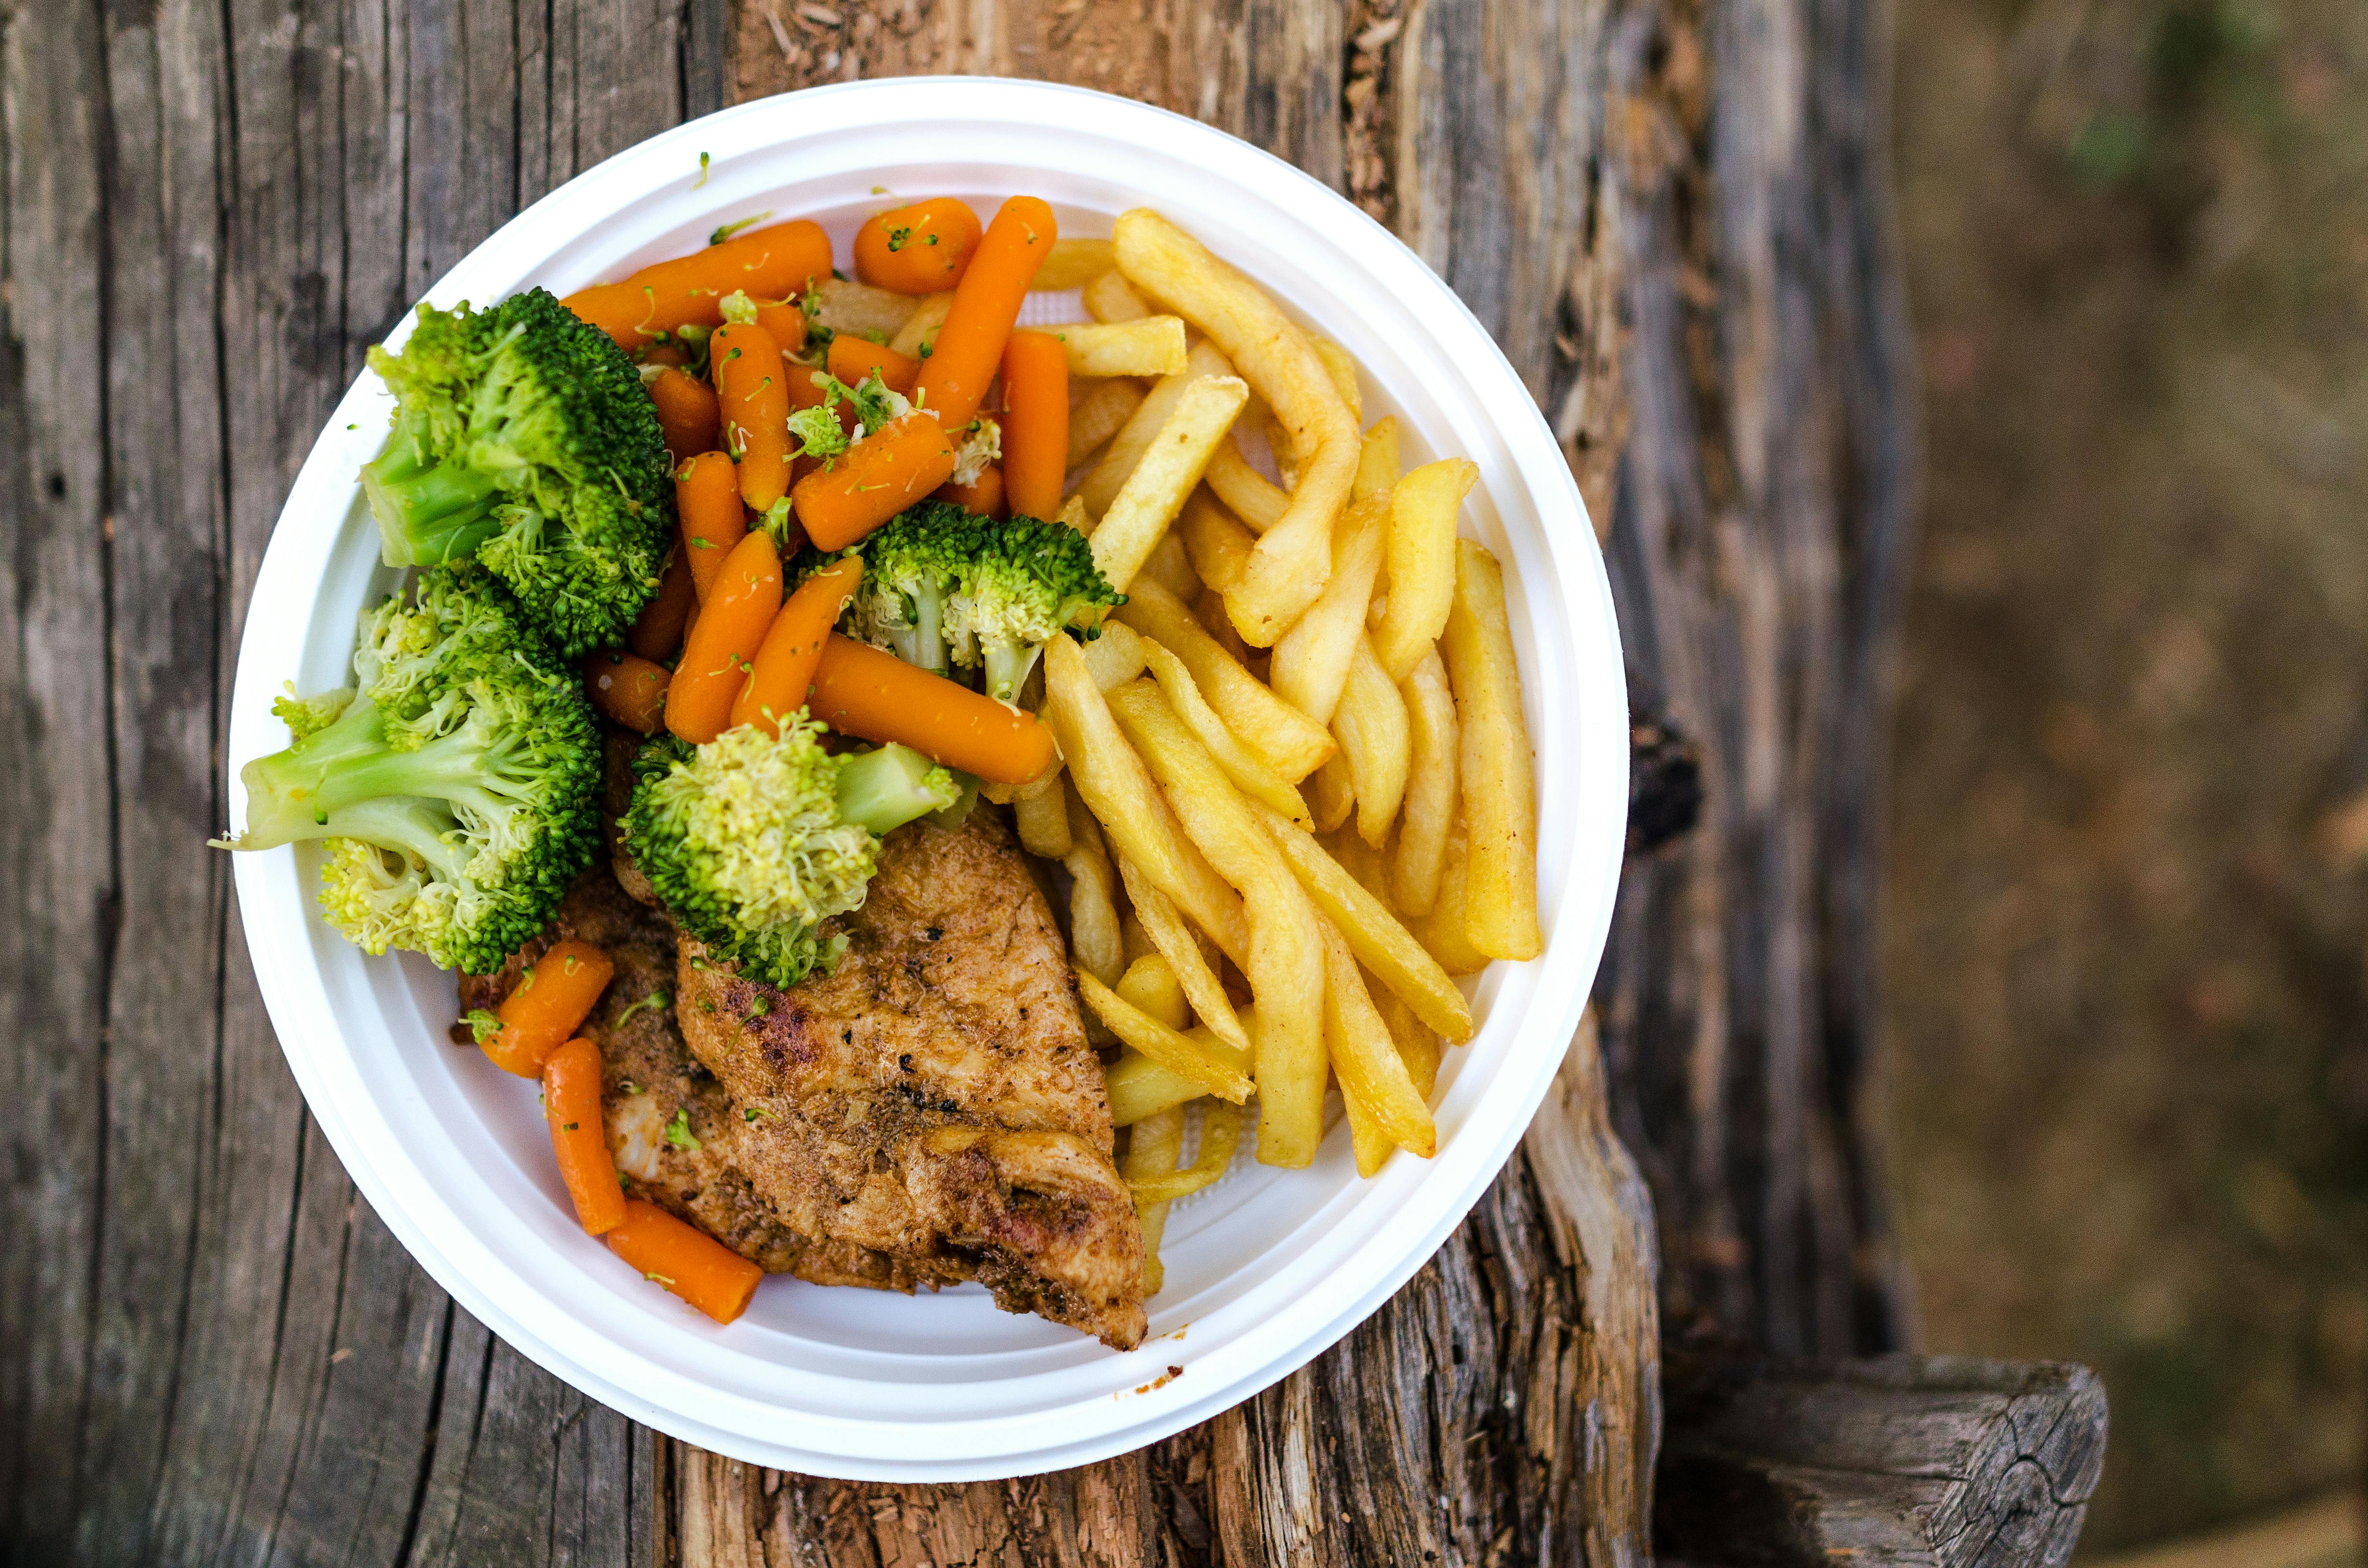 Super Delicious & Gluten-Free Meal Guide, Recipe Post #451:

Gluten Free Chicken with Broccoli and Quinoa